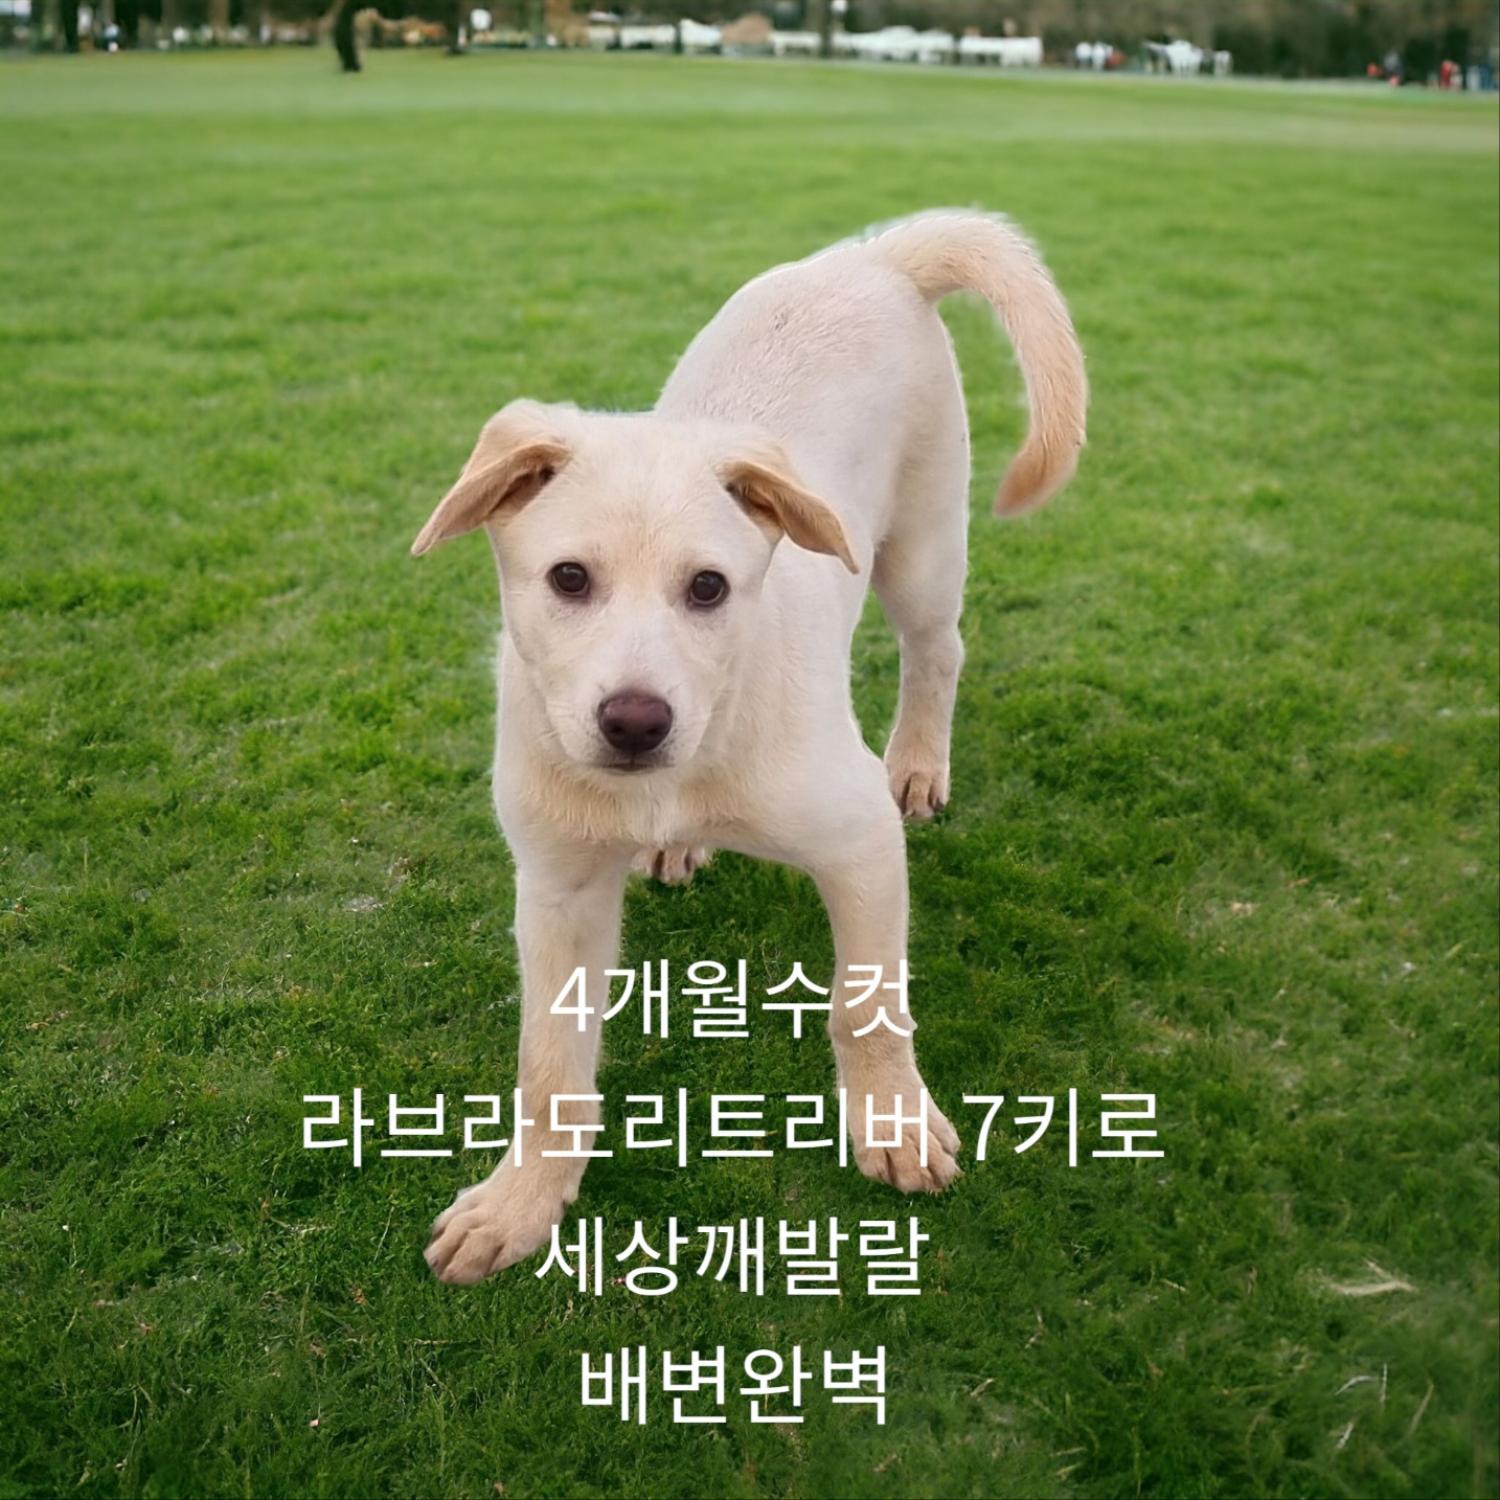 공고 번호가 경북-성주-2024-00220인 라브라도 리트리버 동물 사진